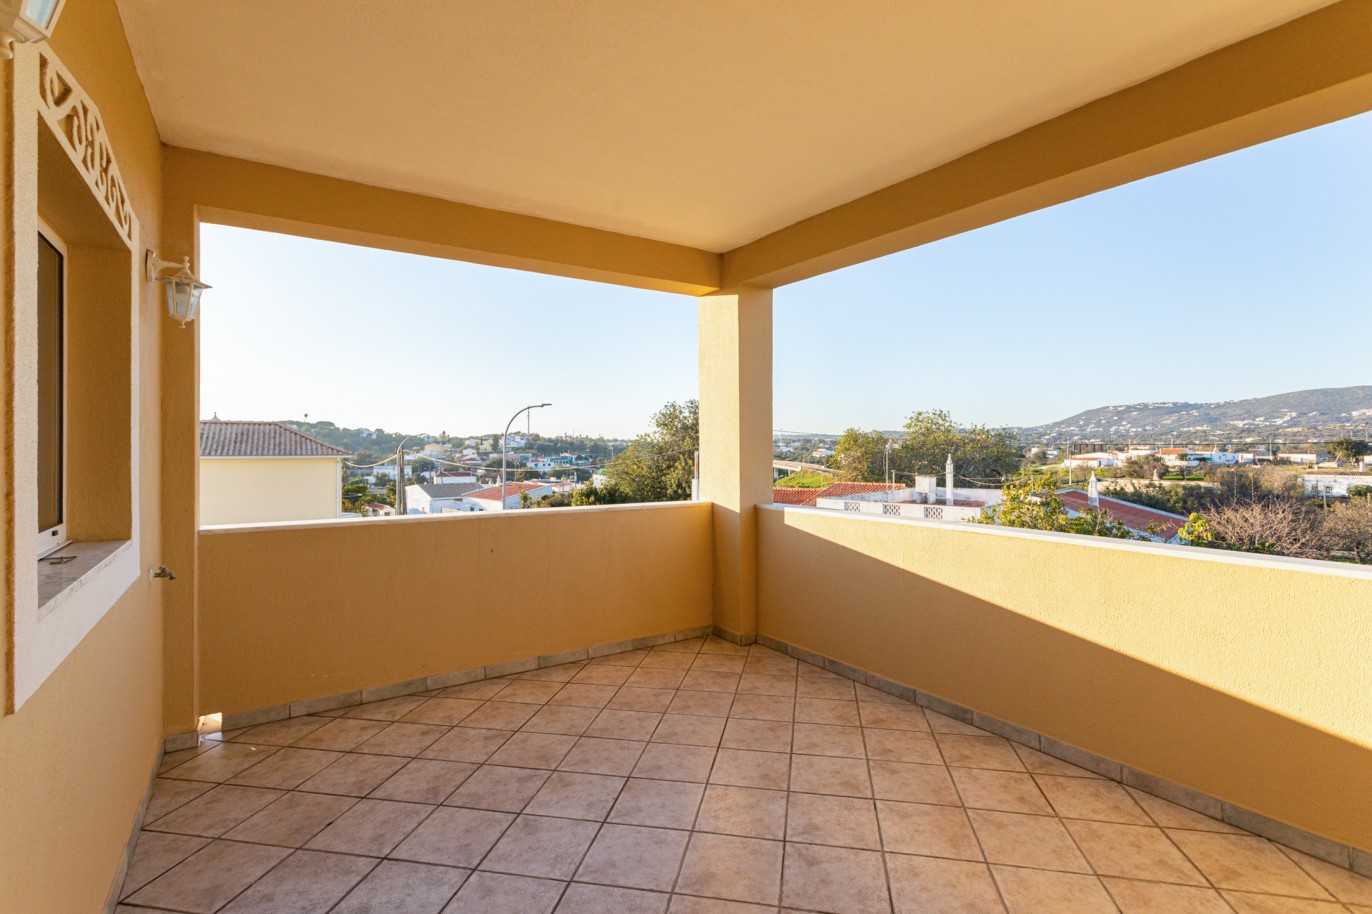 Villa de 4 dormitorios en zona de prestigio, en venta en Almancil, Algarve_217670